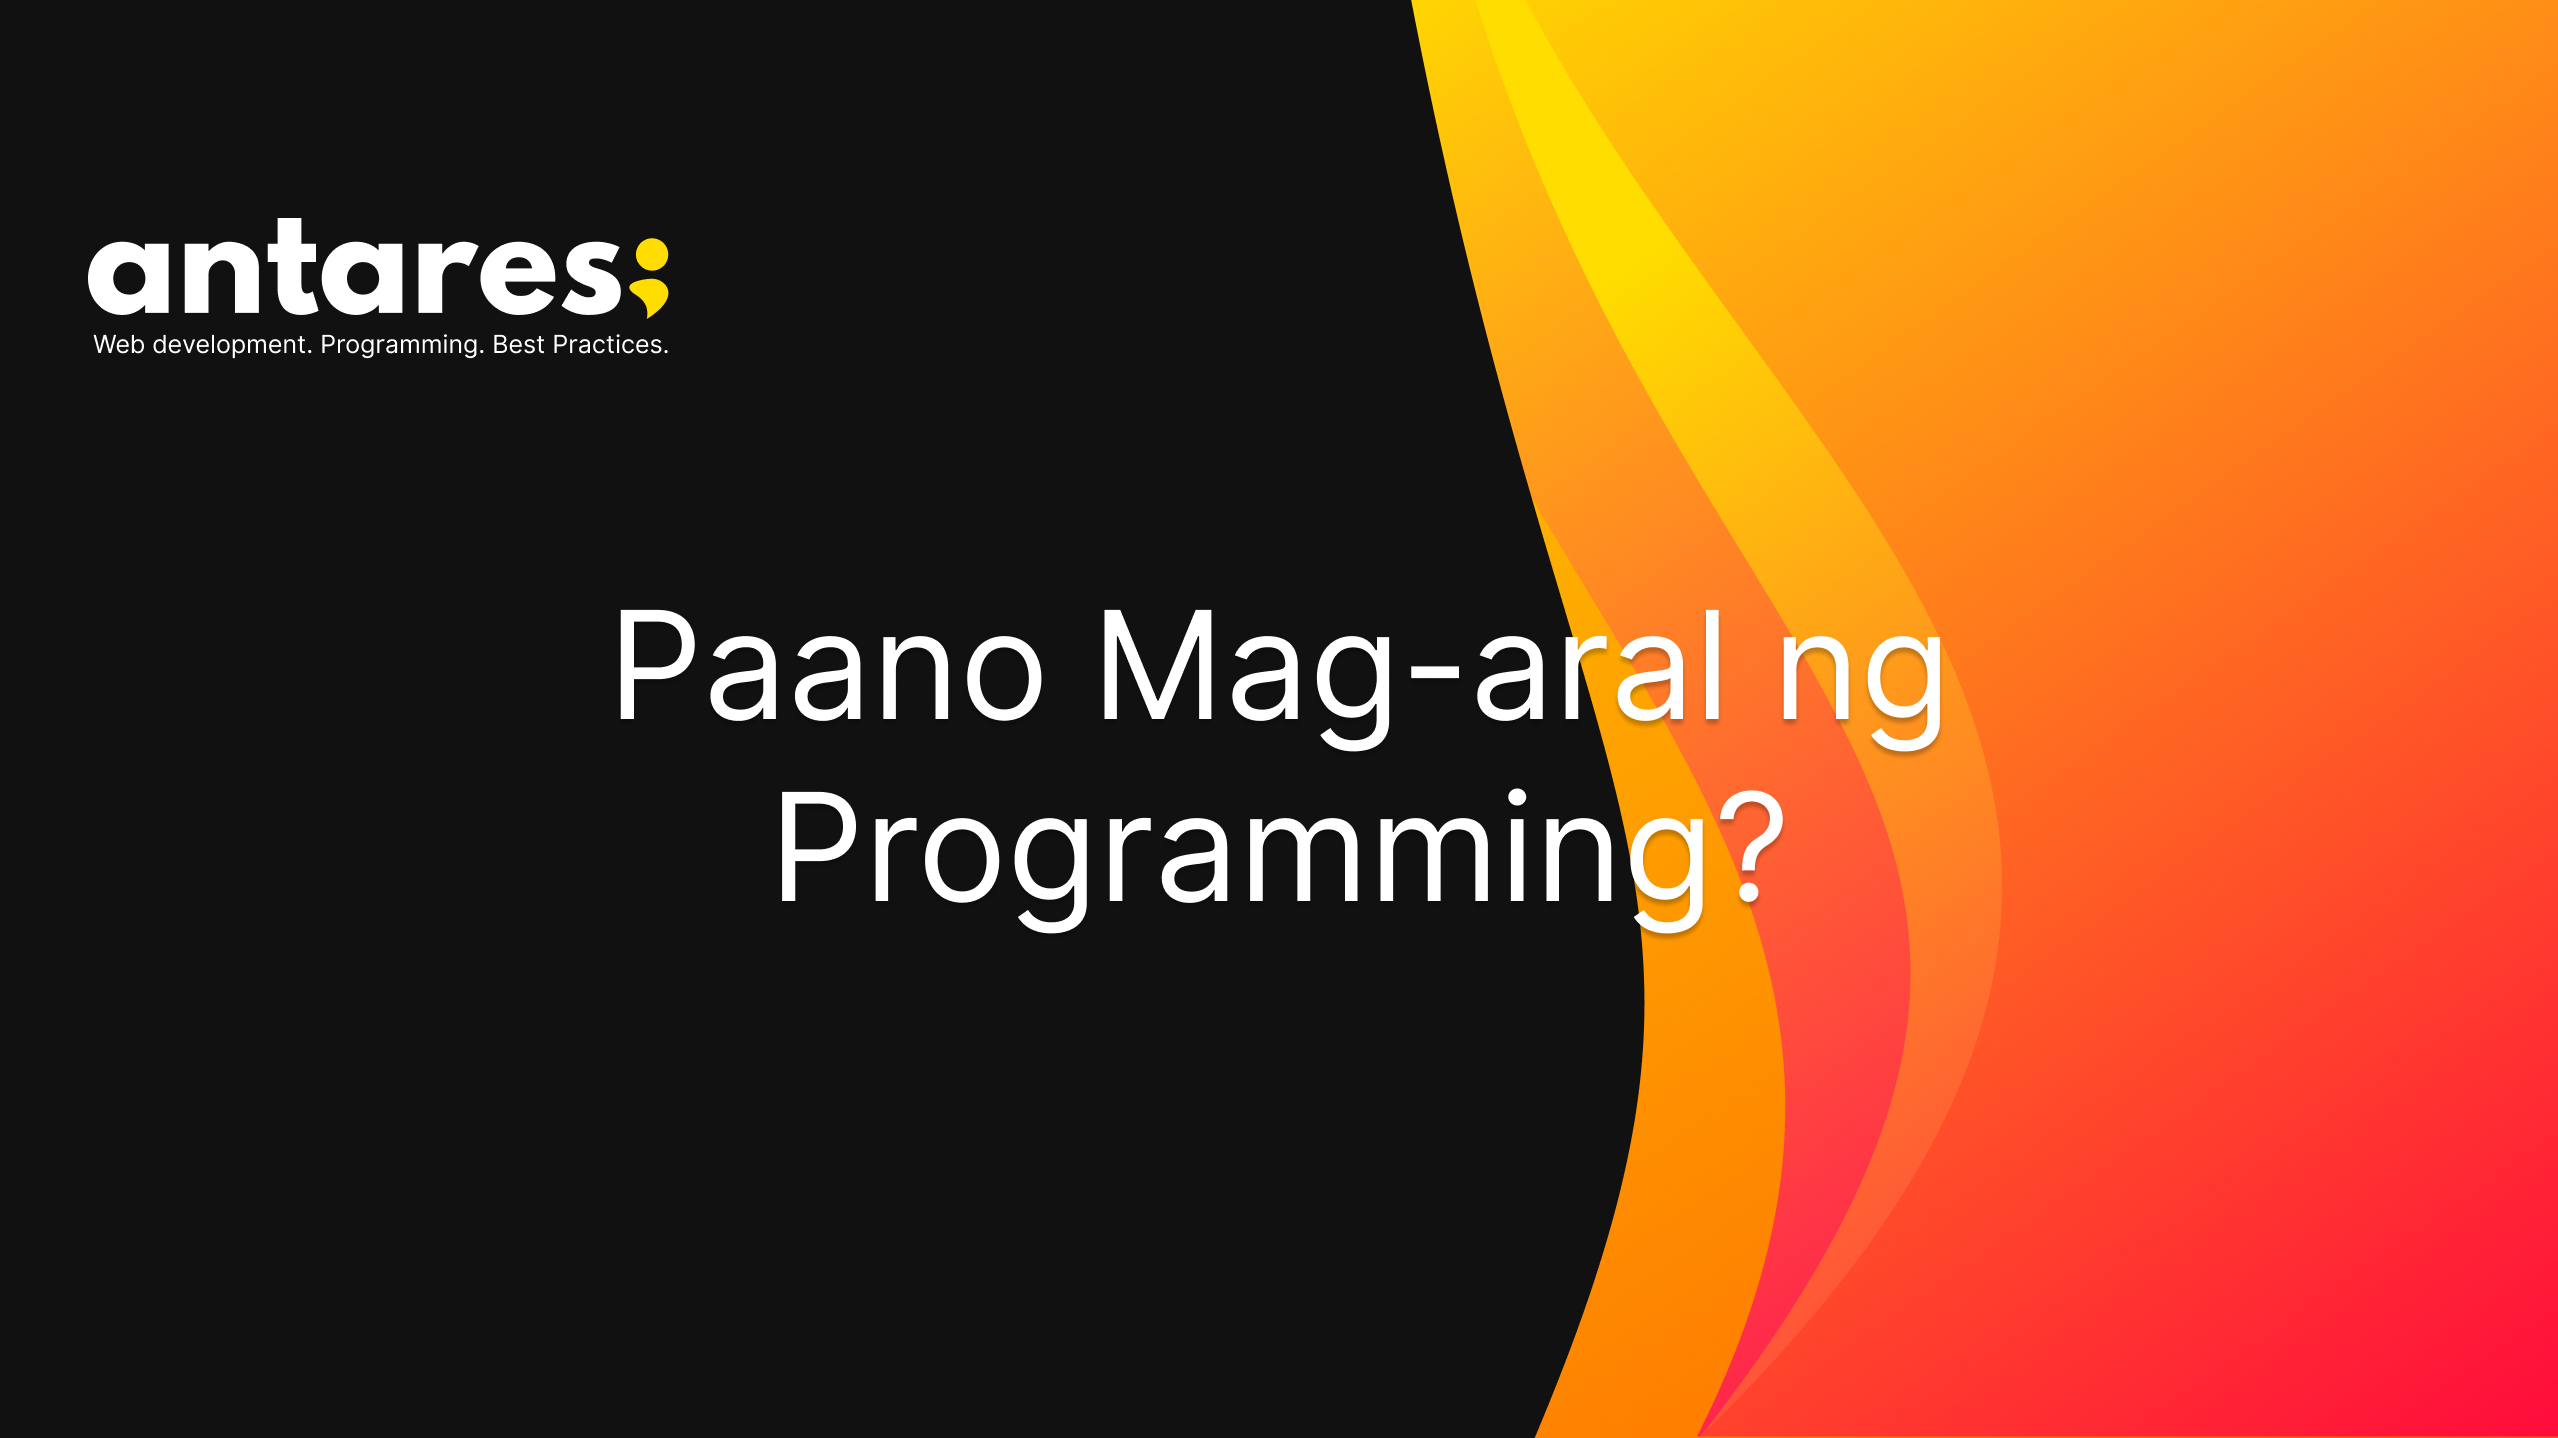 Paano Mag-aral ng Programming?